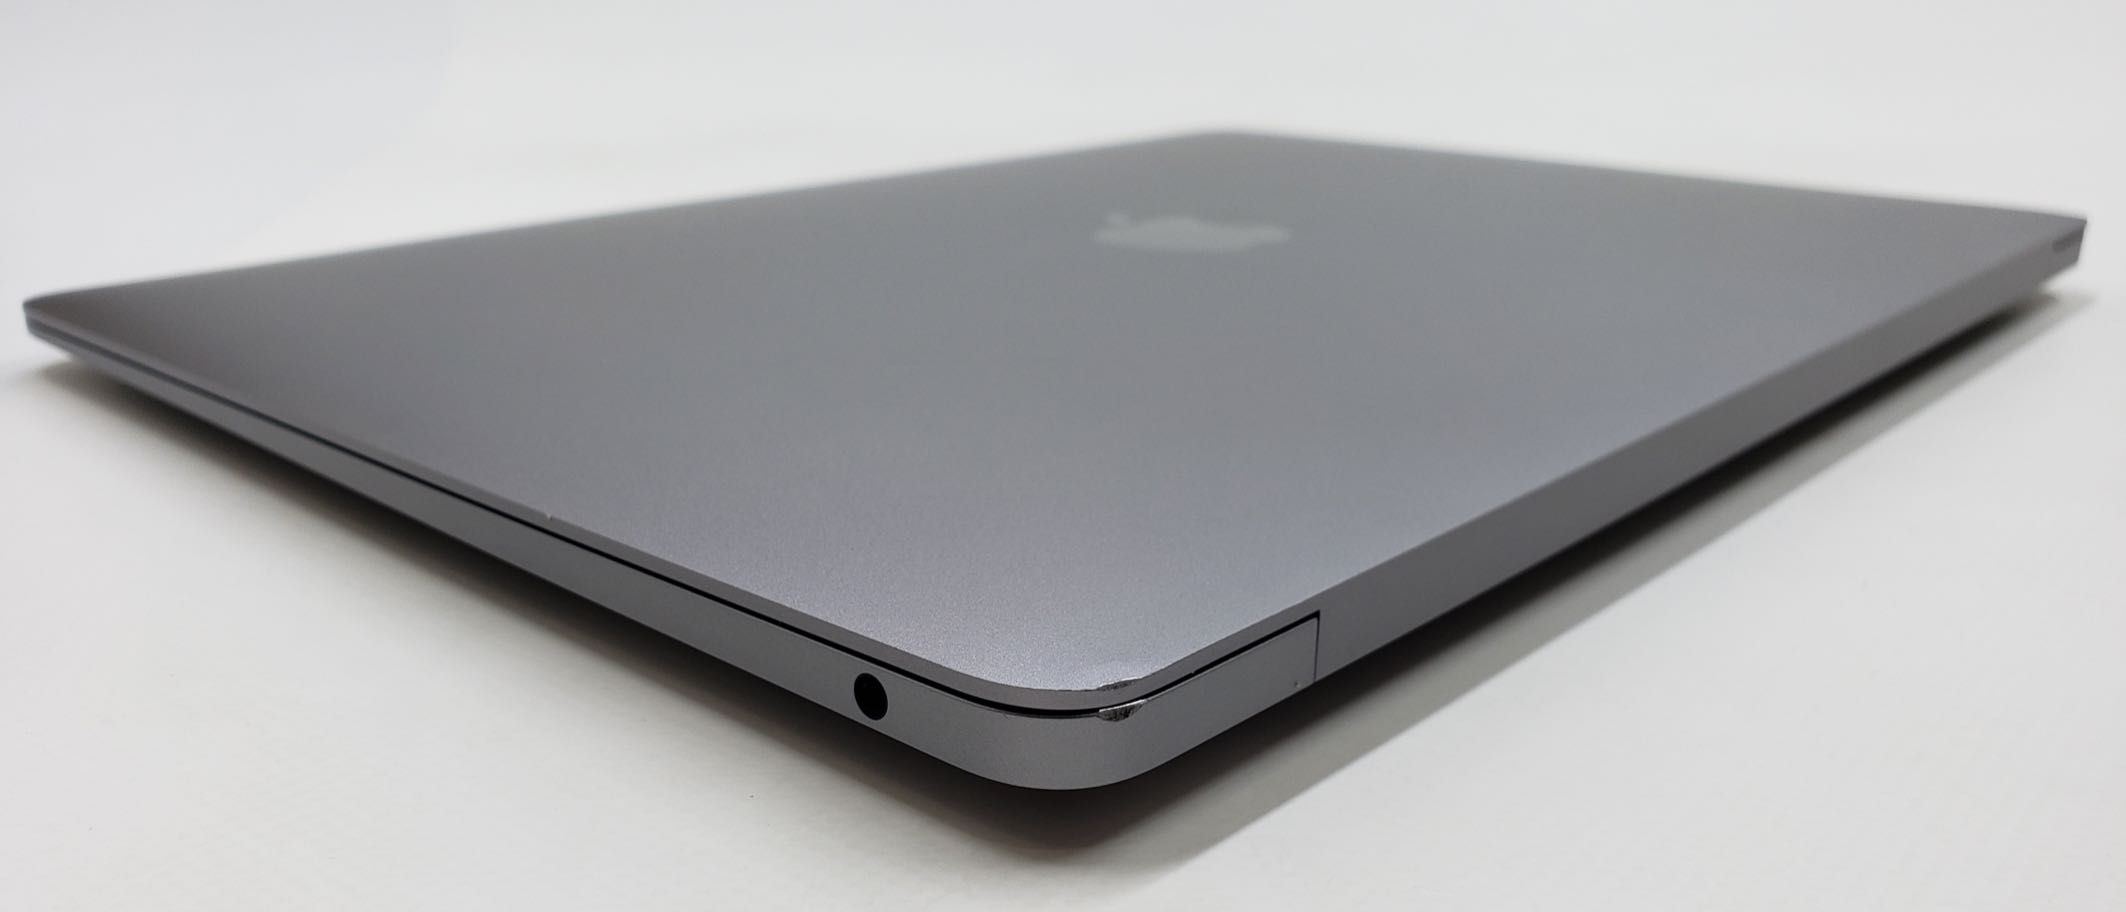 TOP SALE! УНІВЕРСАЛЬНИЙ Ноутбук MacBook Air 13 2020 MGN63 M1/8GB/256GB